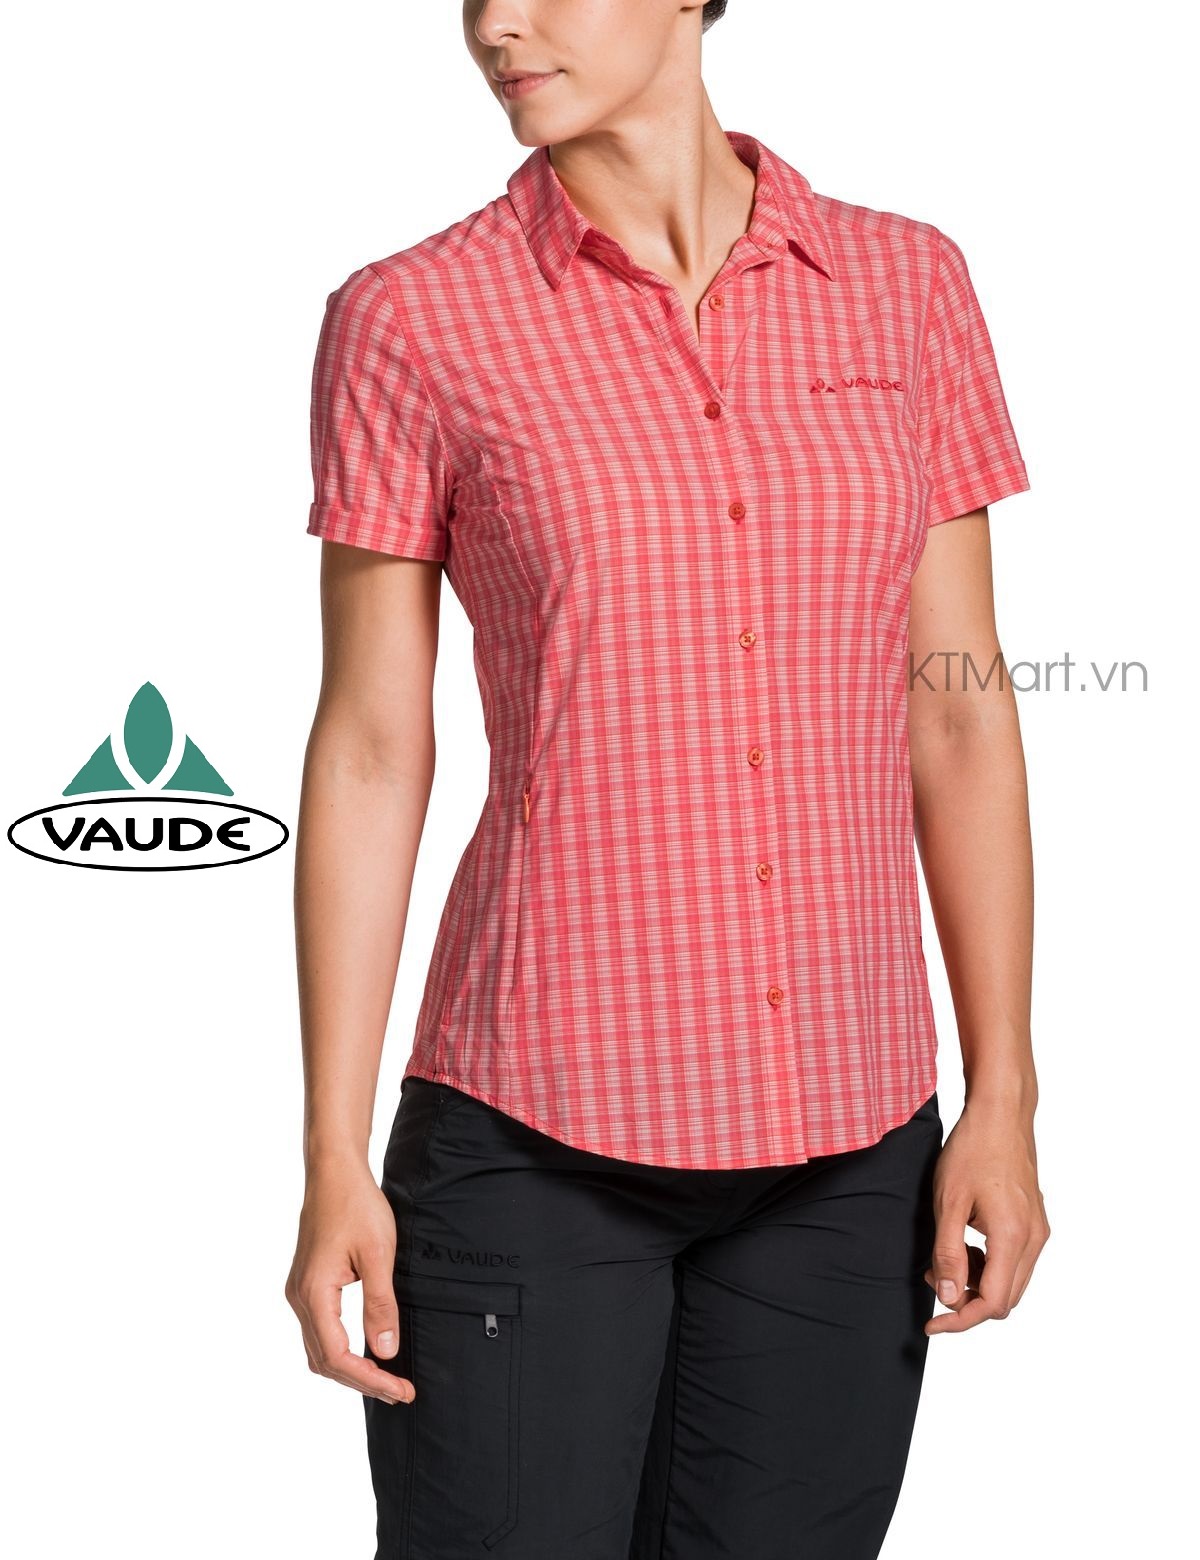 Vaude Women’s Seiland Shirt II 41315 Vaude size S/38